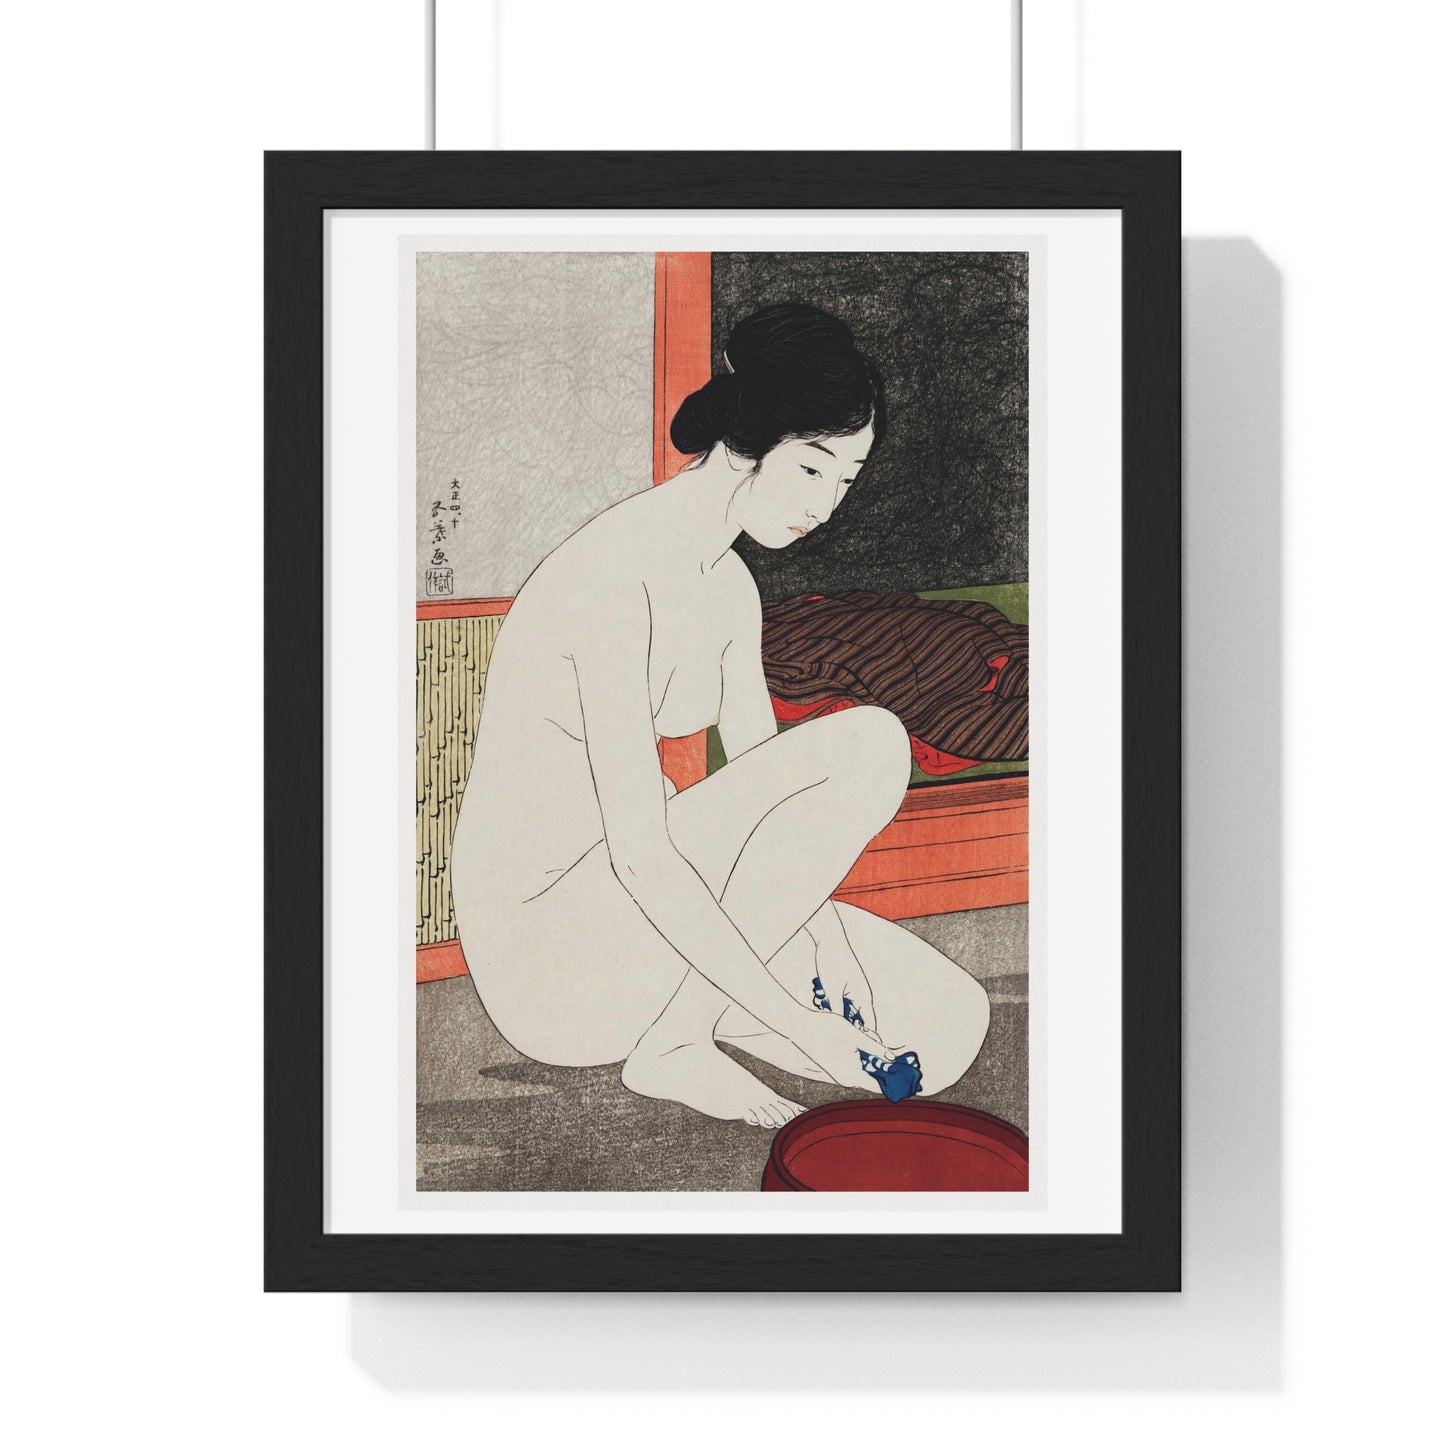 Yokugo no Onna 'Woman After a Bath' (1915) by Goyō Hashiguchi, from the Original, Framed Art Print